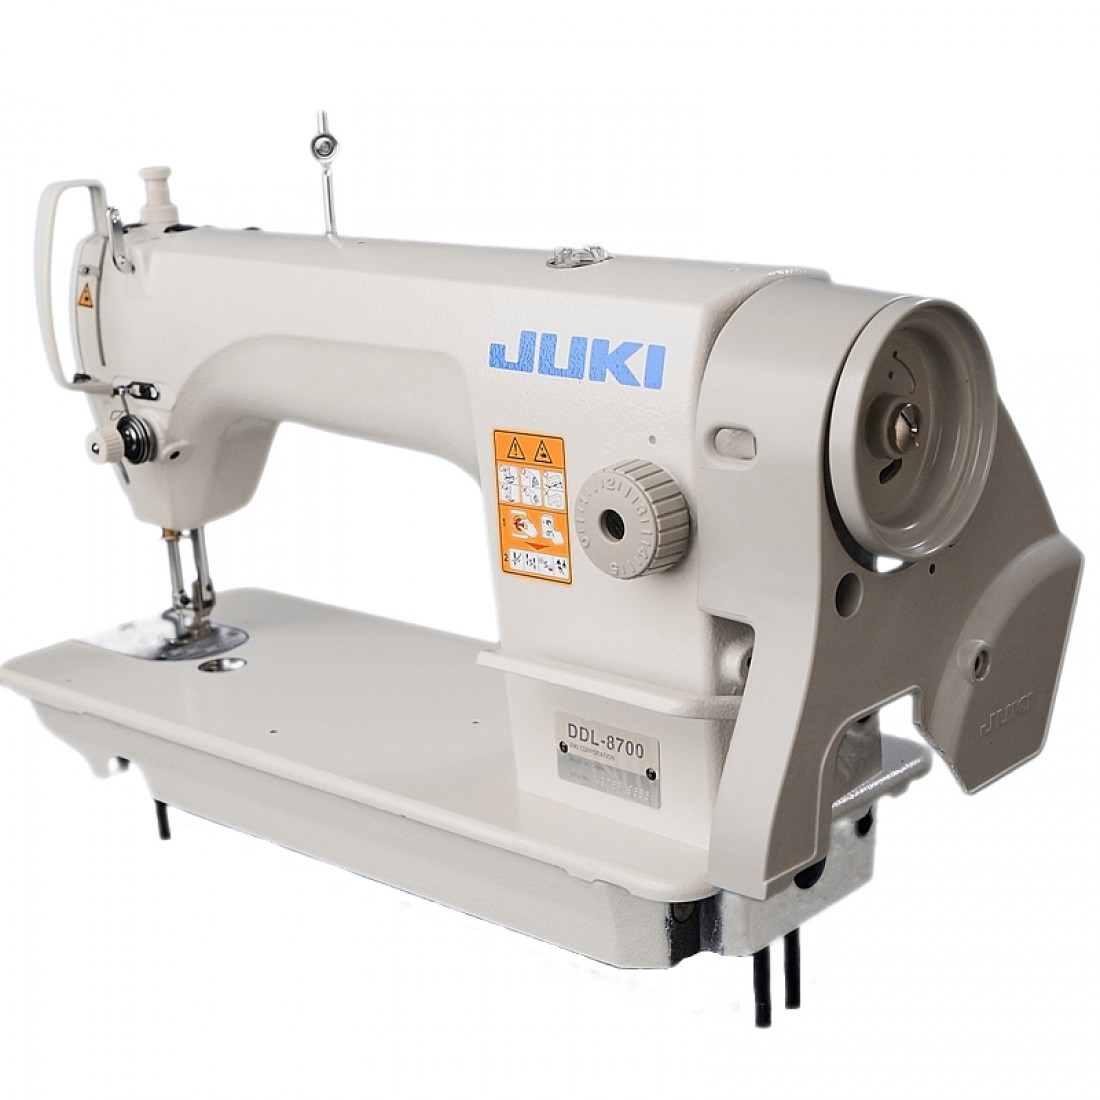 Машинка juki ddl. Промышленная швейная машина Juki DDL-8700. Швейная машинка Джуки 8700. Швейная машинка Juki DDL 8700. Машинка швейная Juki 8700.